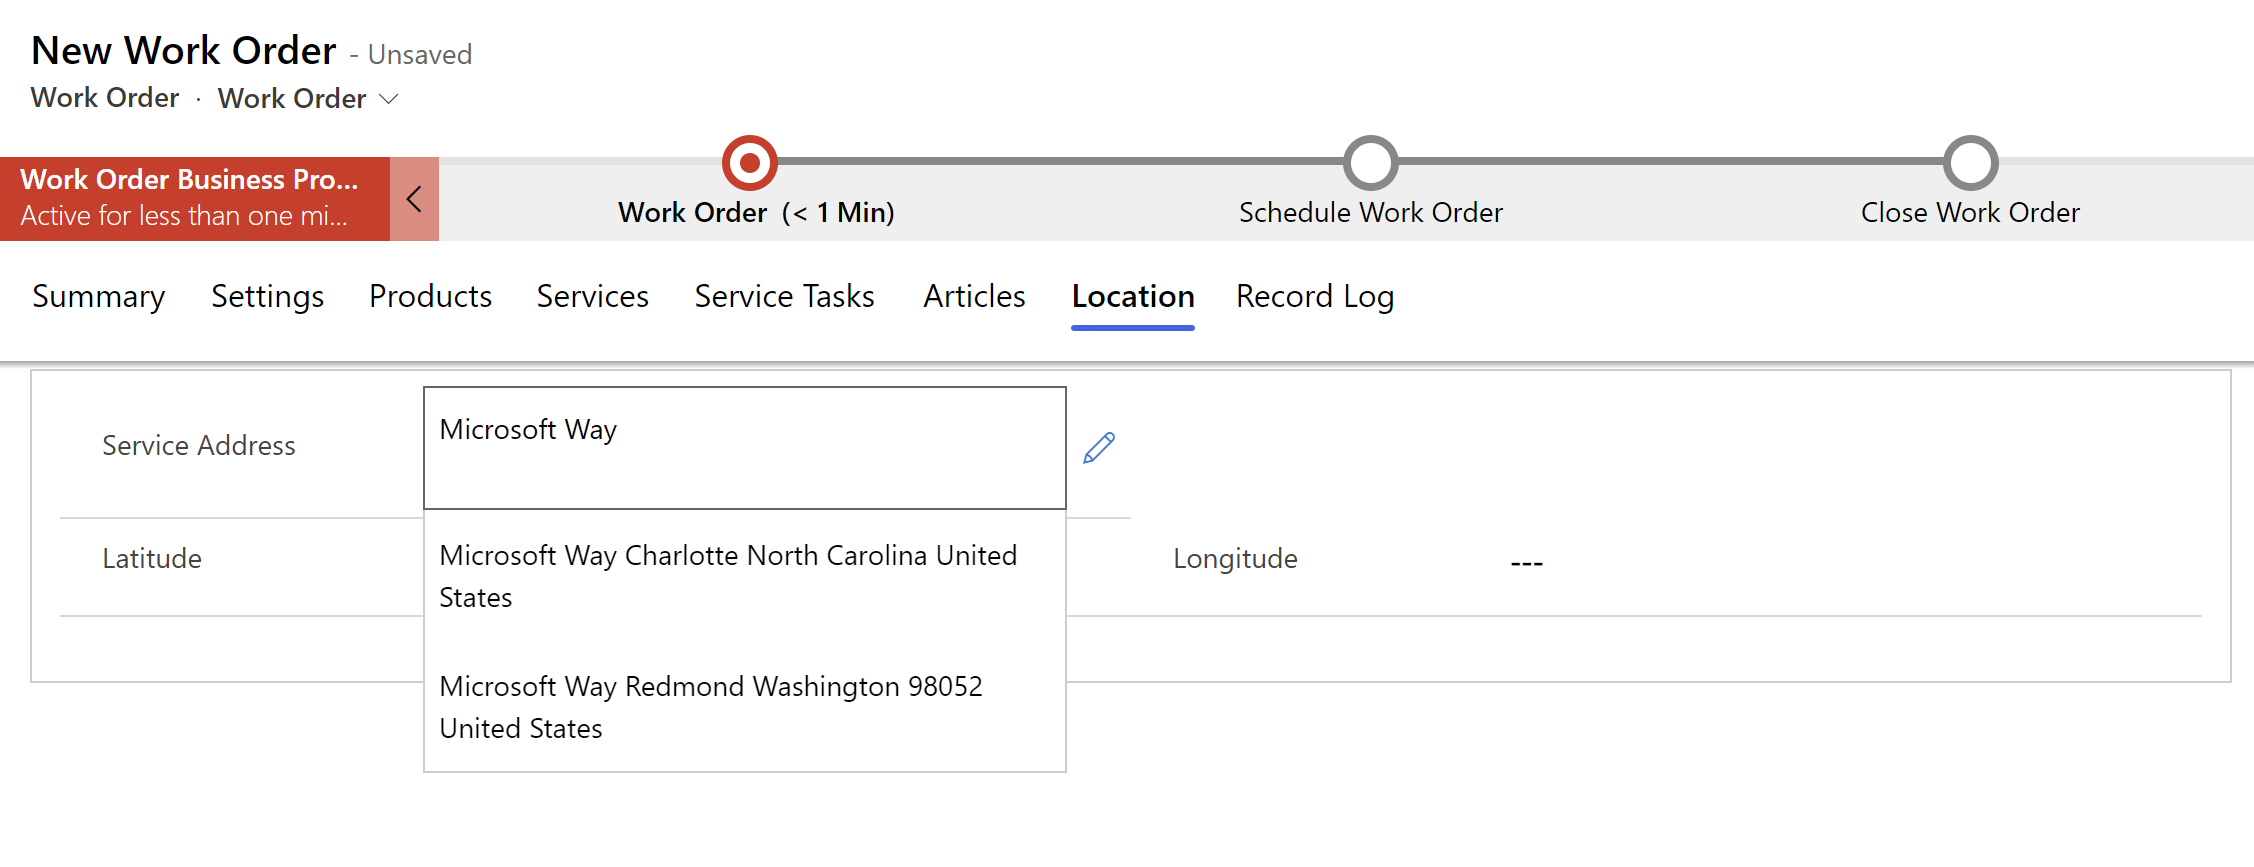 Zrzut ekranu nowego zlecenia pracy w Field Service przedstawiający sugestie adresów w menu rozwijanym.